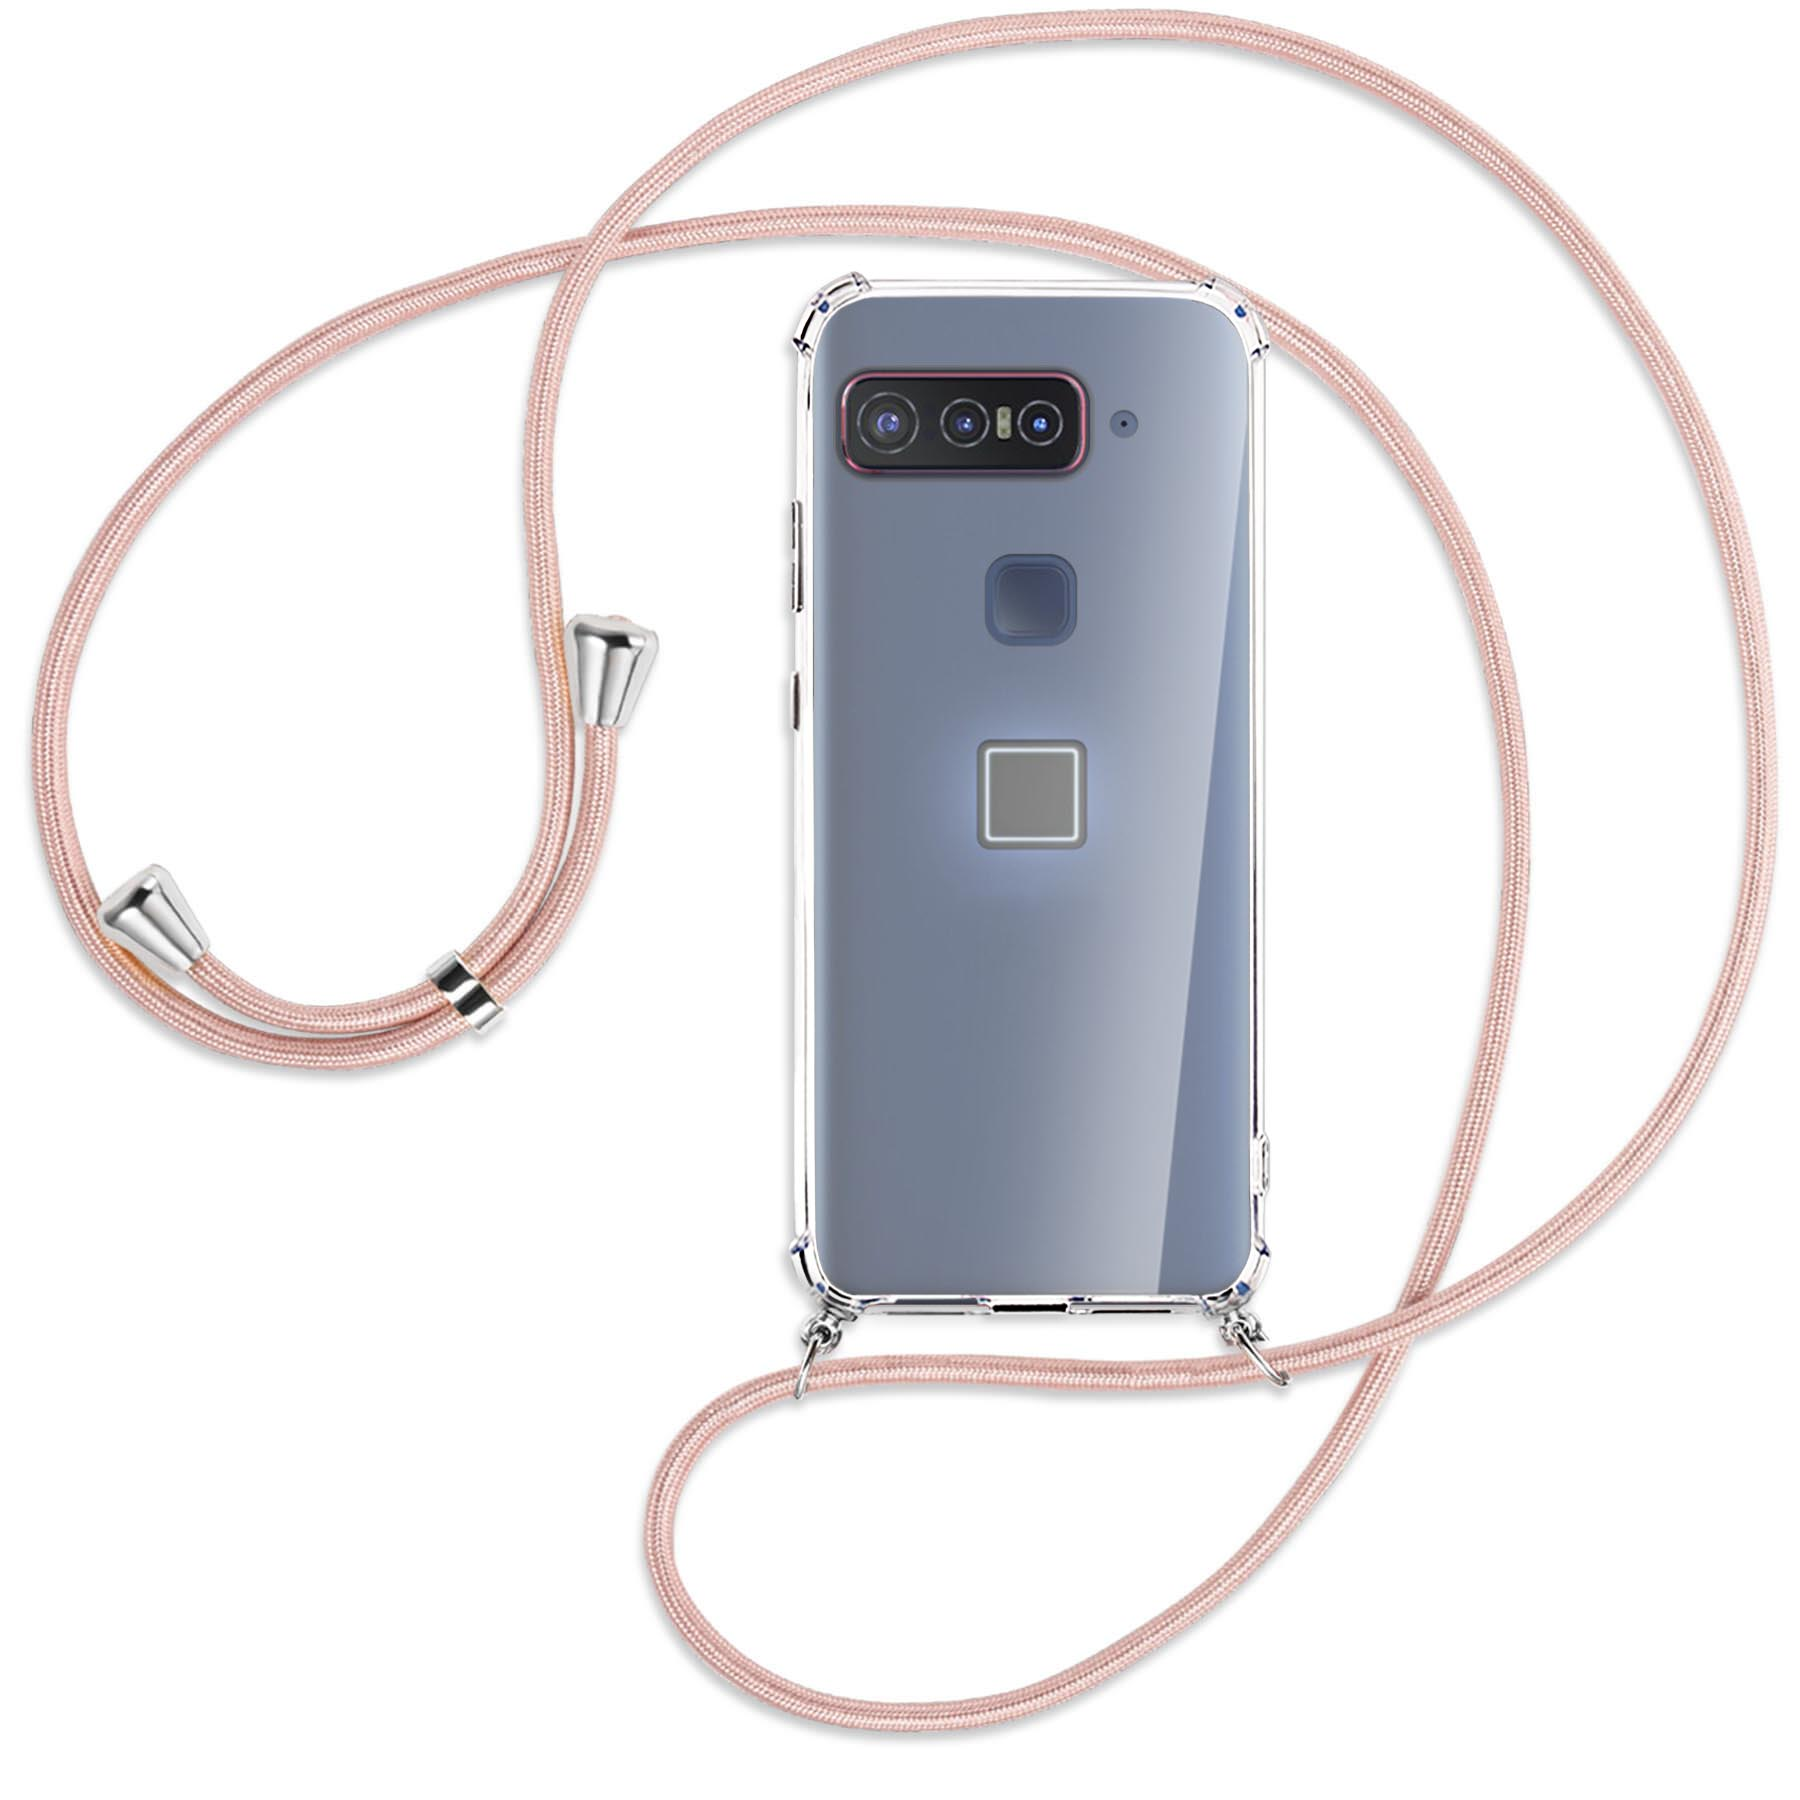 Silber MTB mit ENERGY Kordel, / Smartphone Umhänge-Hülle for Asus, MORE Rosegold Snapdragon Qualcomm Insiders, Backcover,